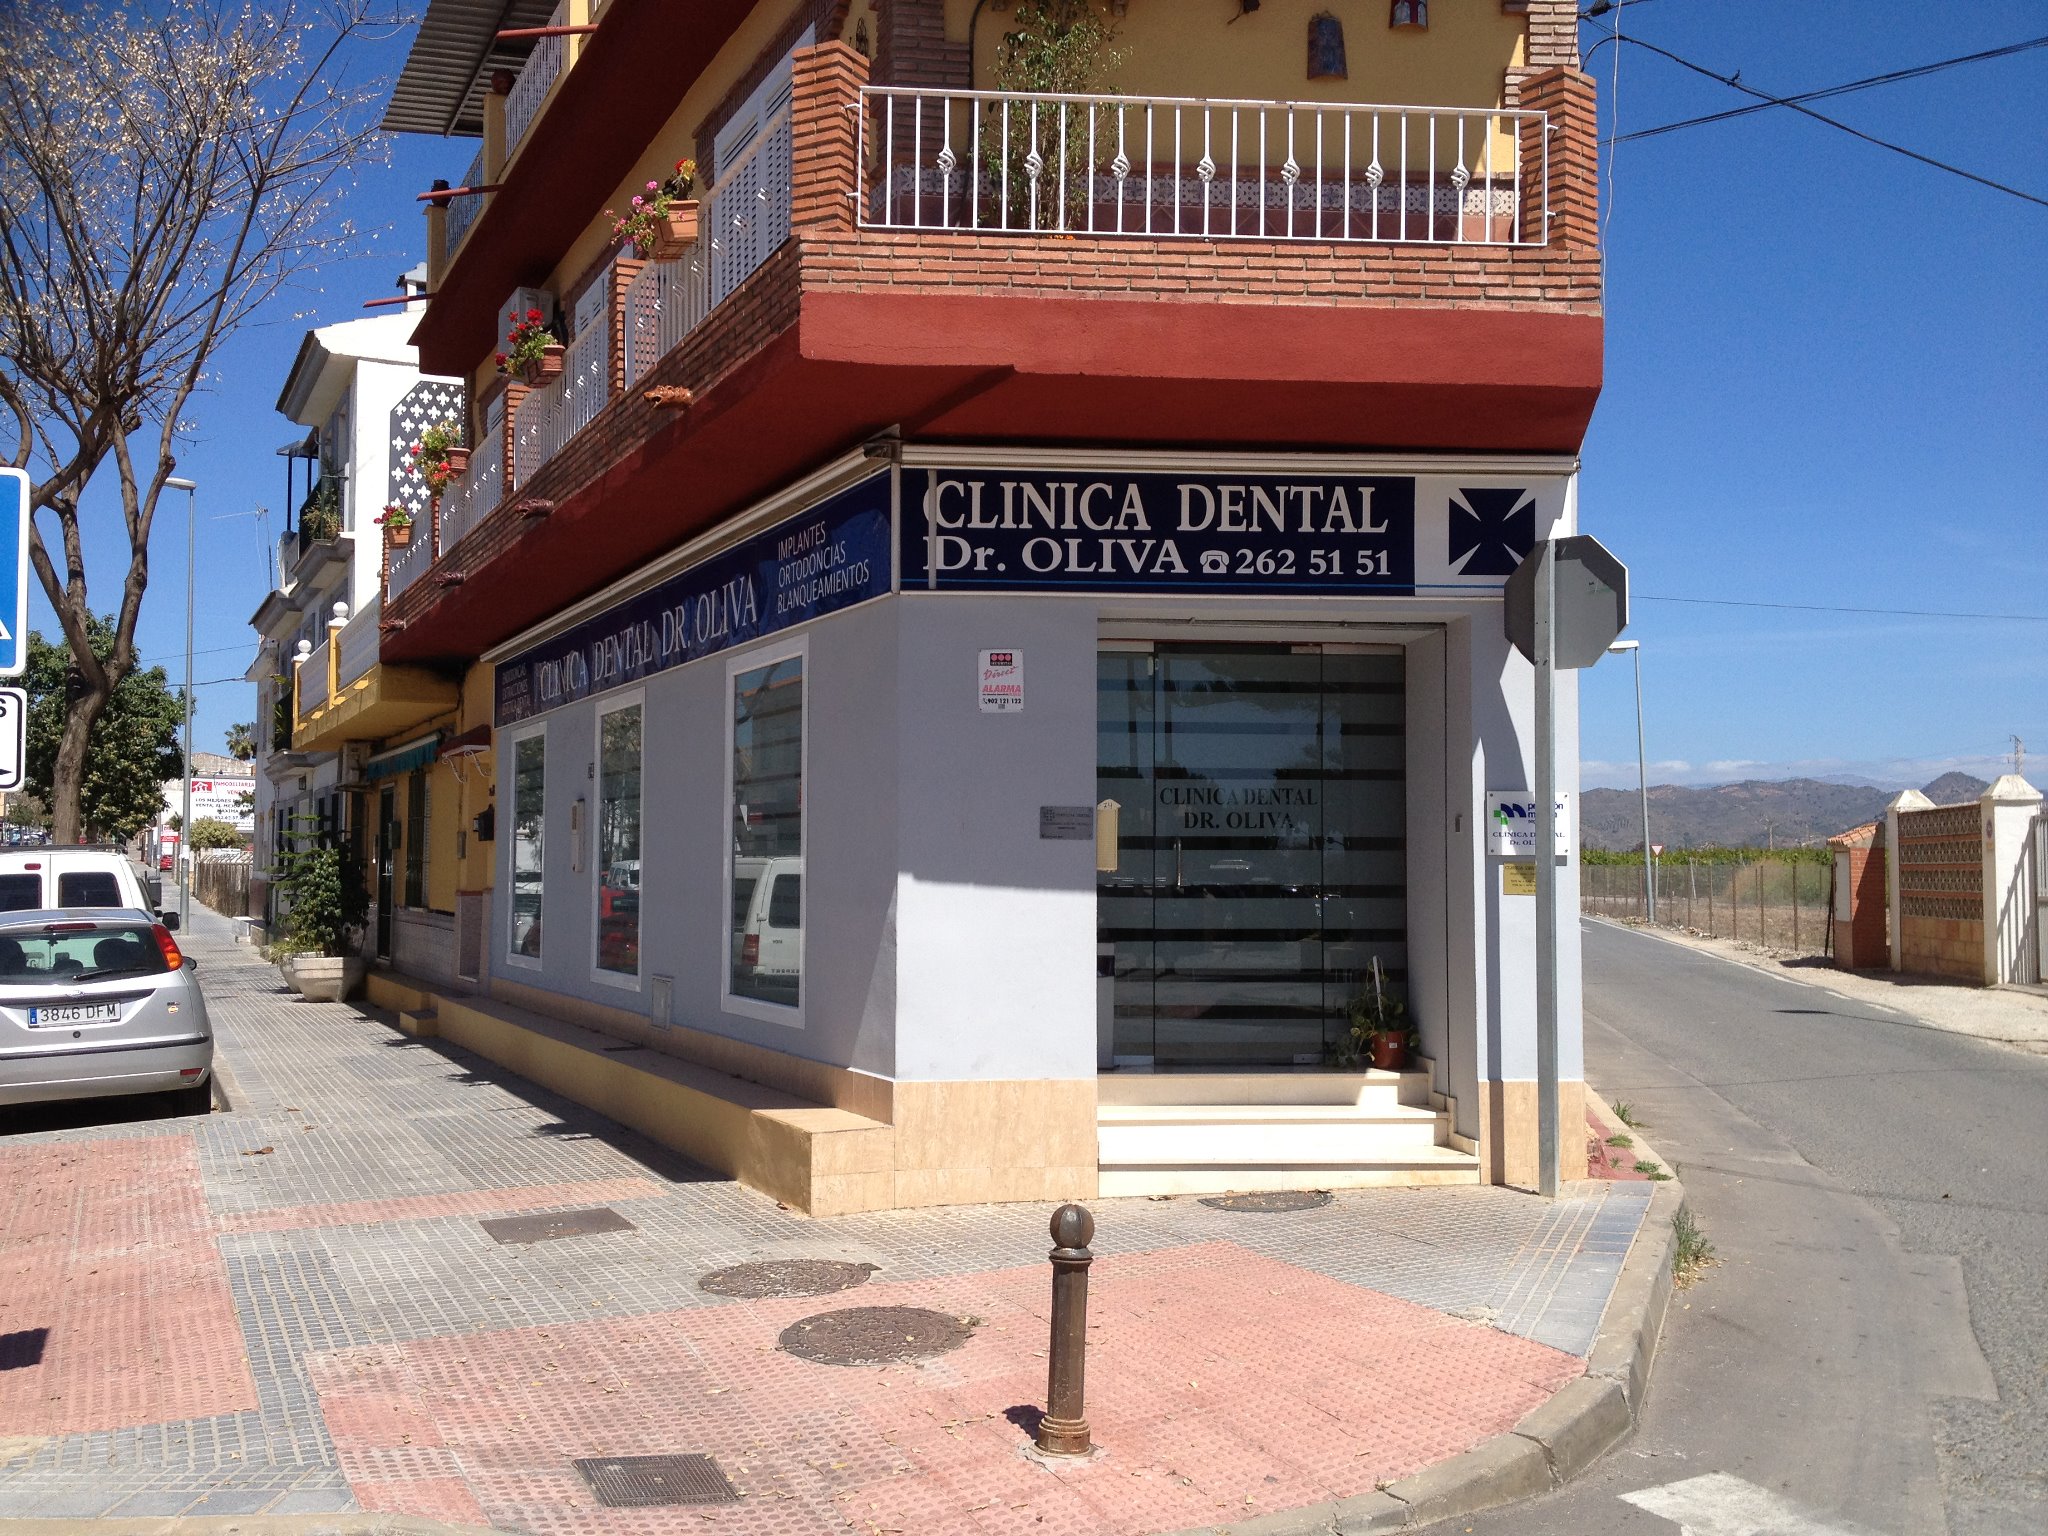 Dentista en Málaga Clínica dental Dr. Oliva